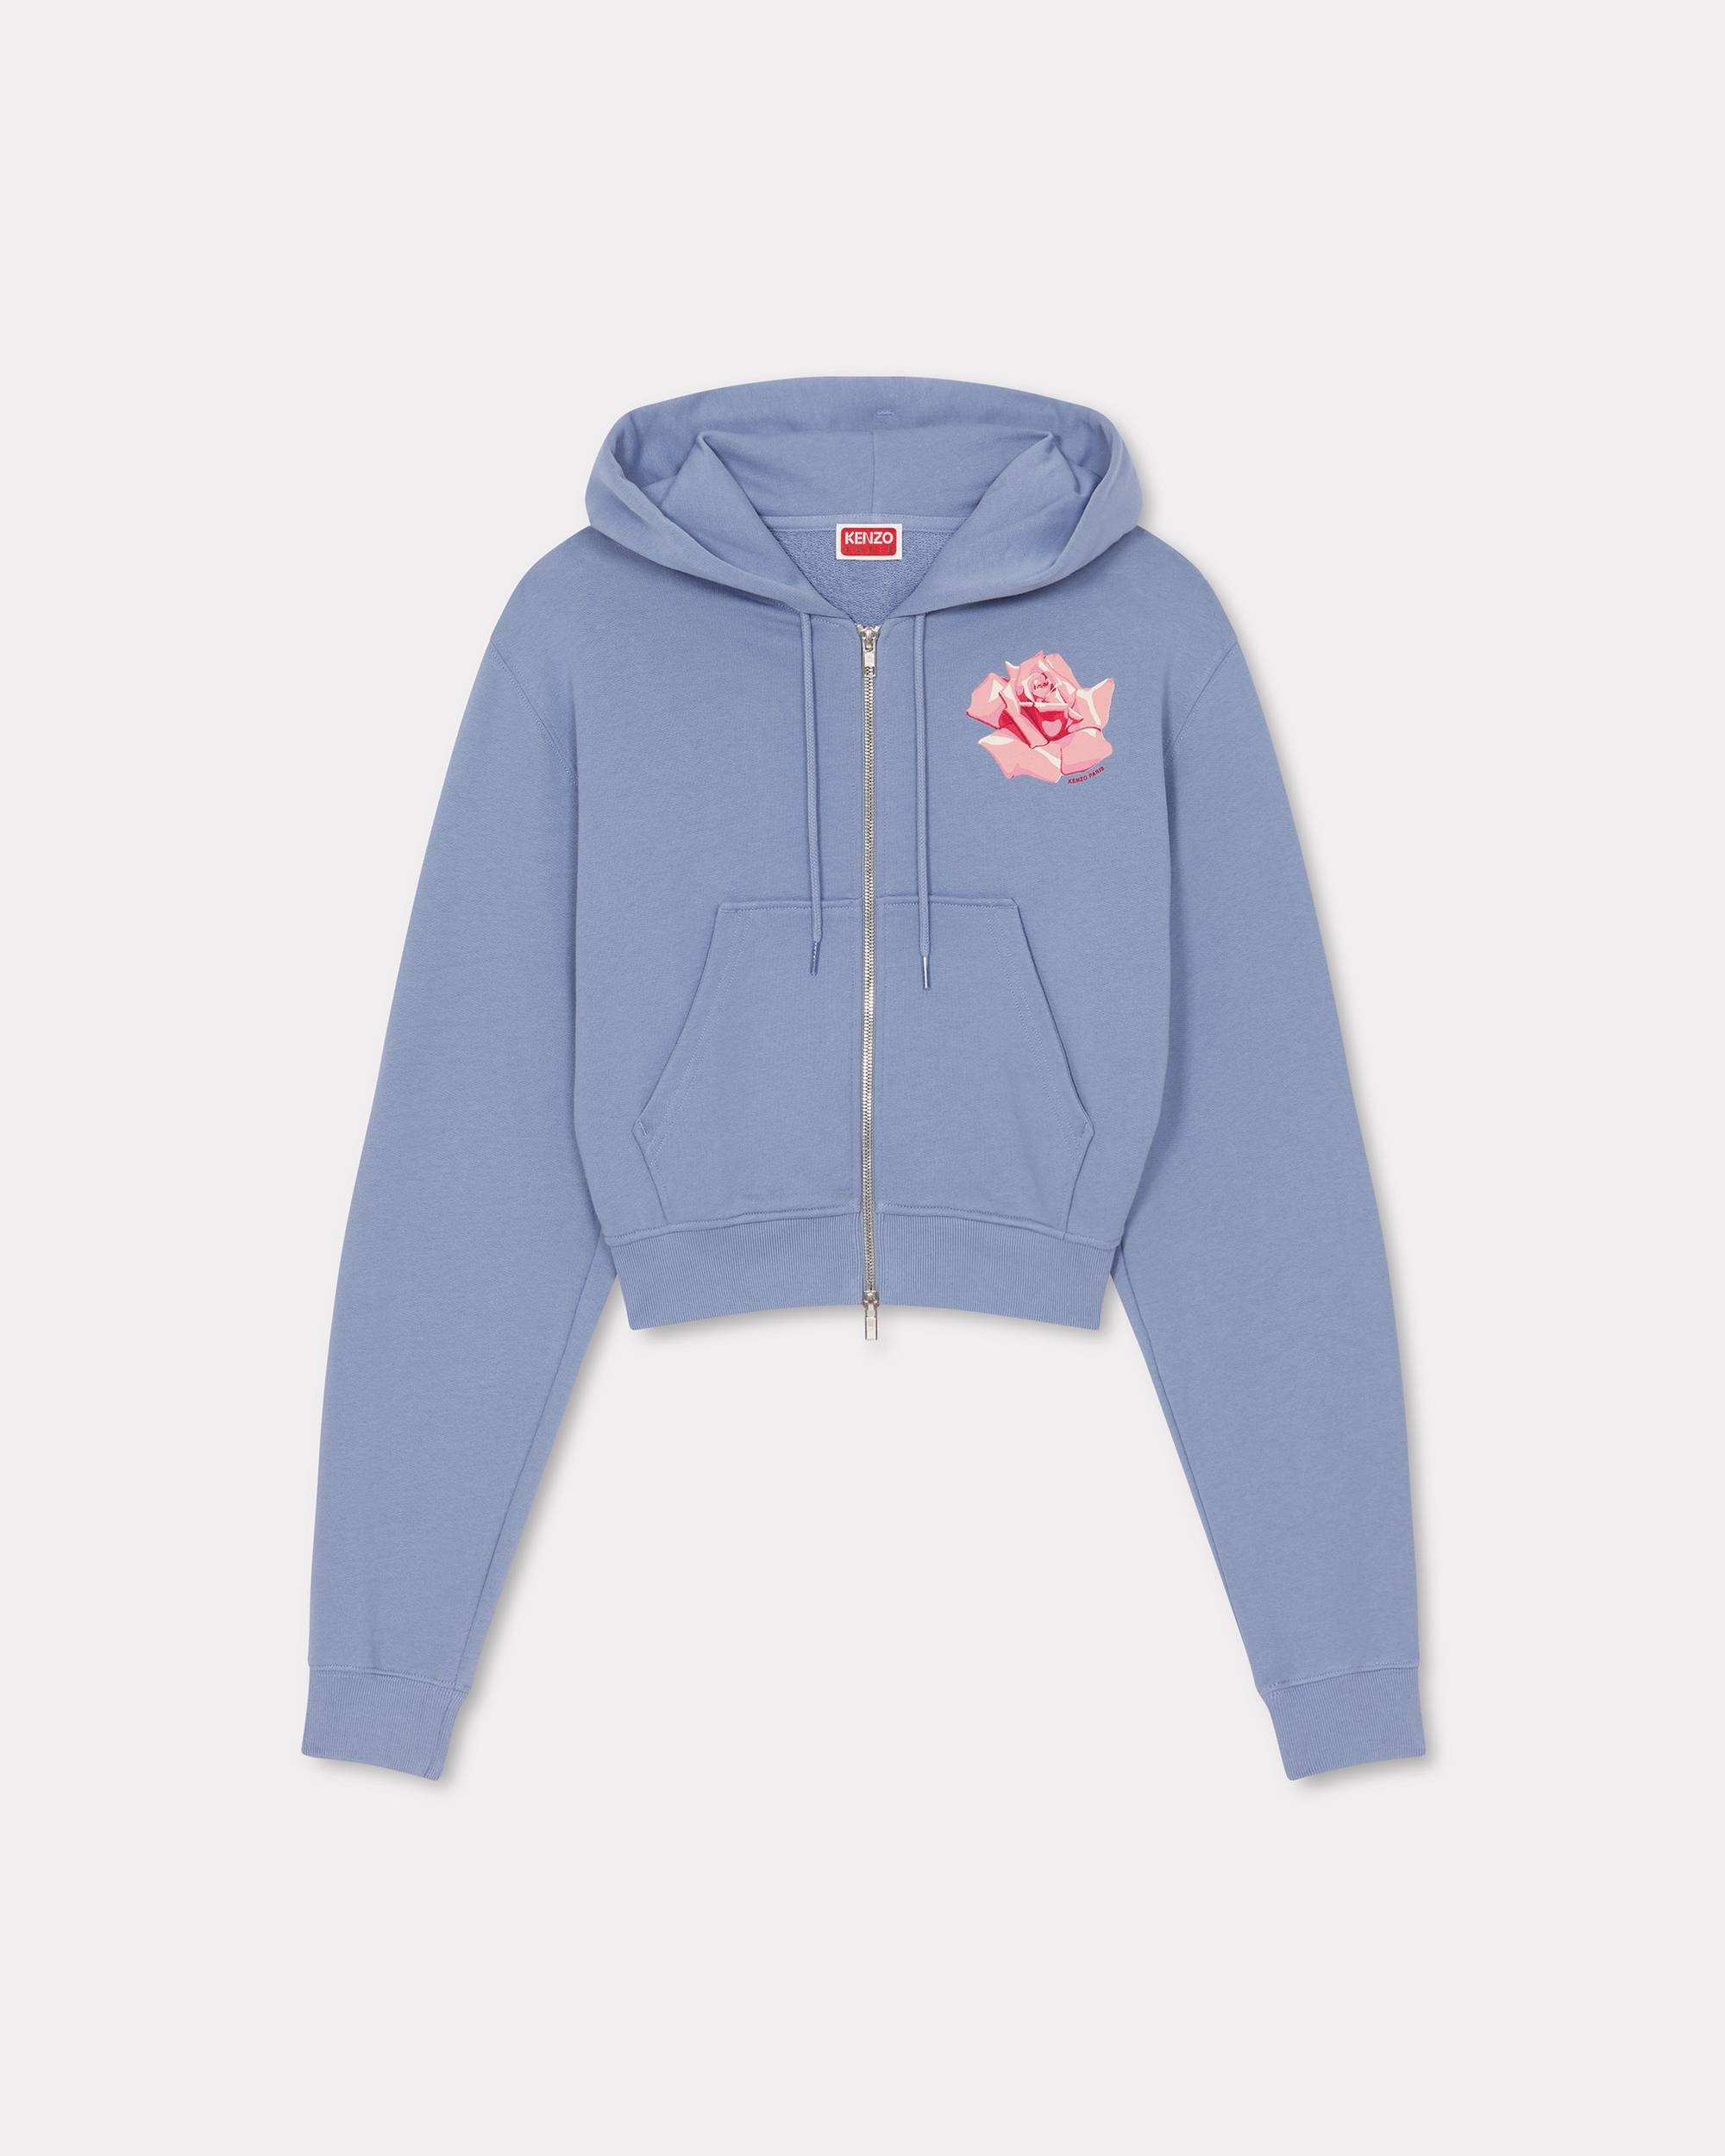 'KENZO Rose' zip up hoodie - 1